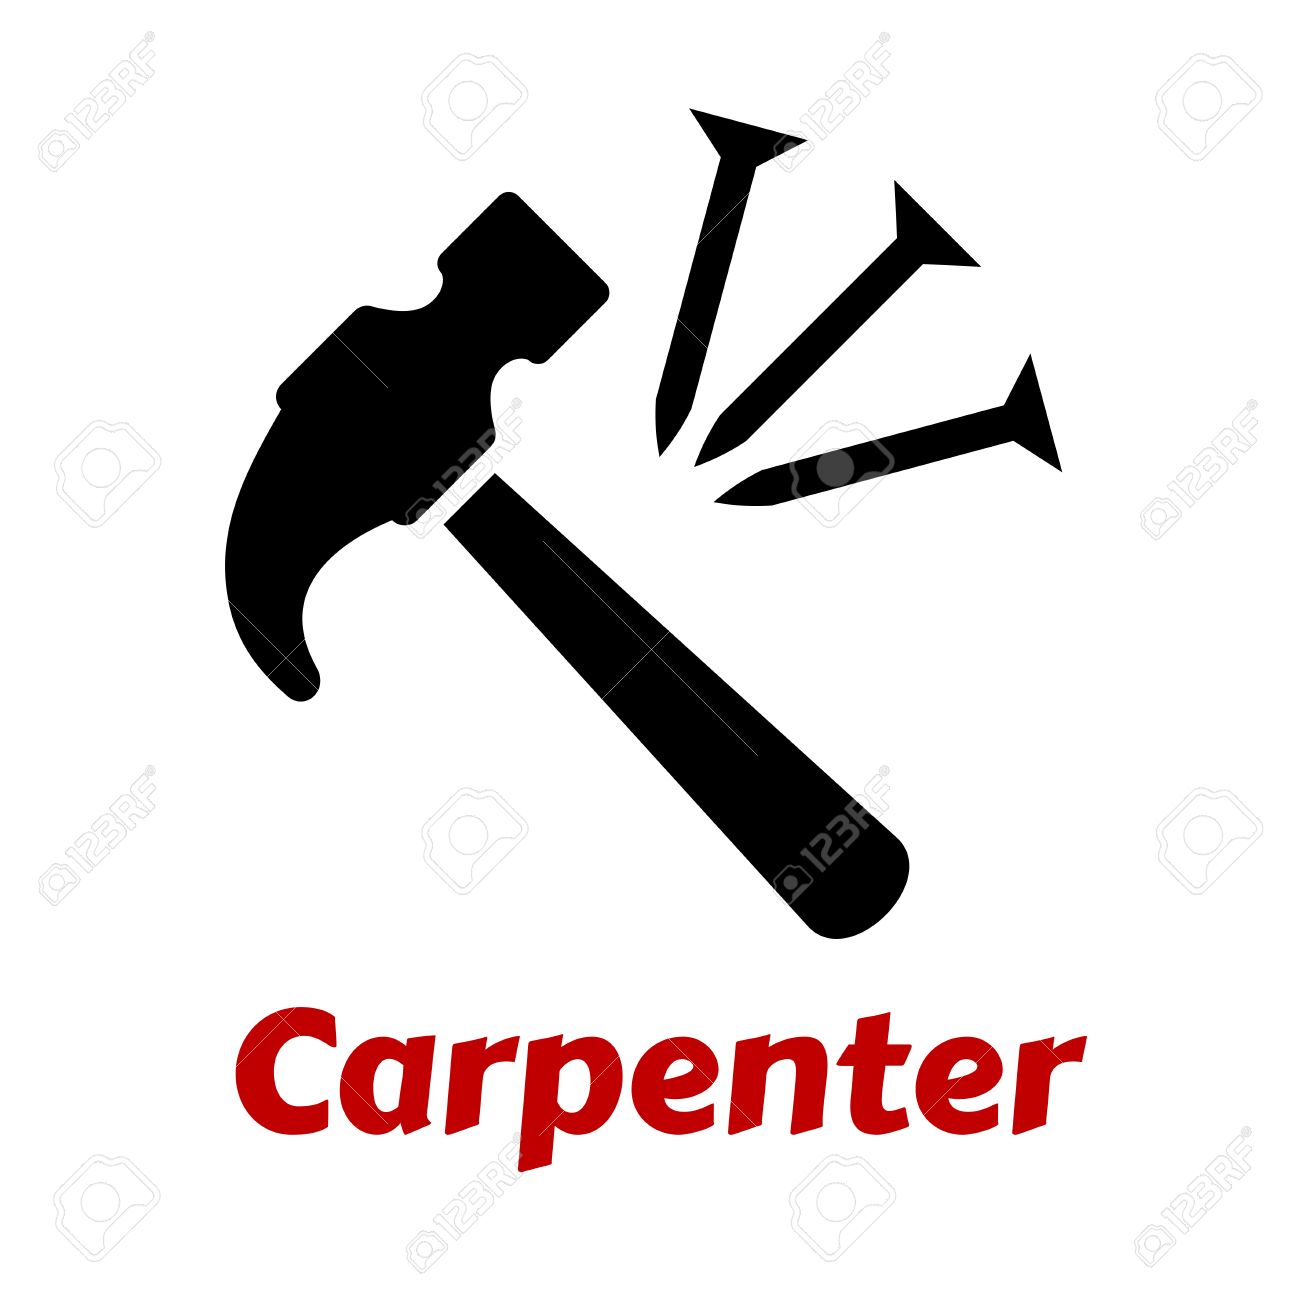 Carpenter icon set Royalty Free Vector Image - VectorStock